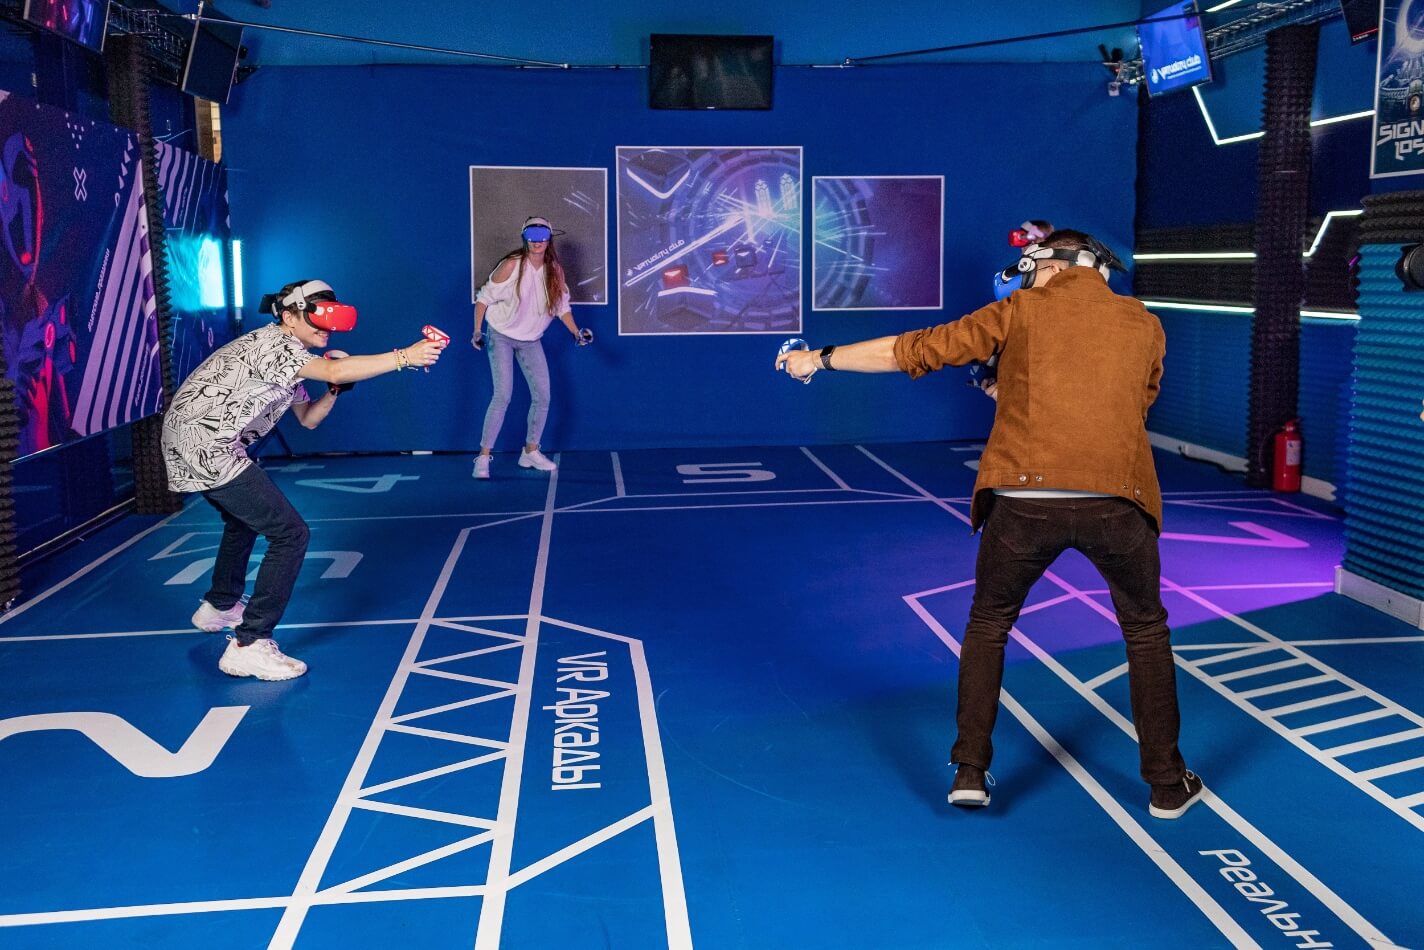 Большой vr клуб. VR Oculus Quest 2. Арена виртуальной реальности. Виртуалити парк развлечений. Виртуальная Арена в Москве.